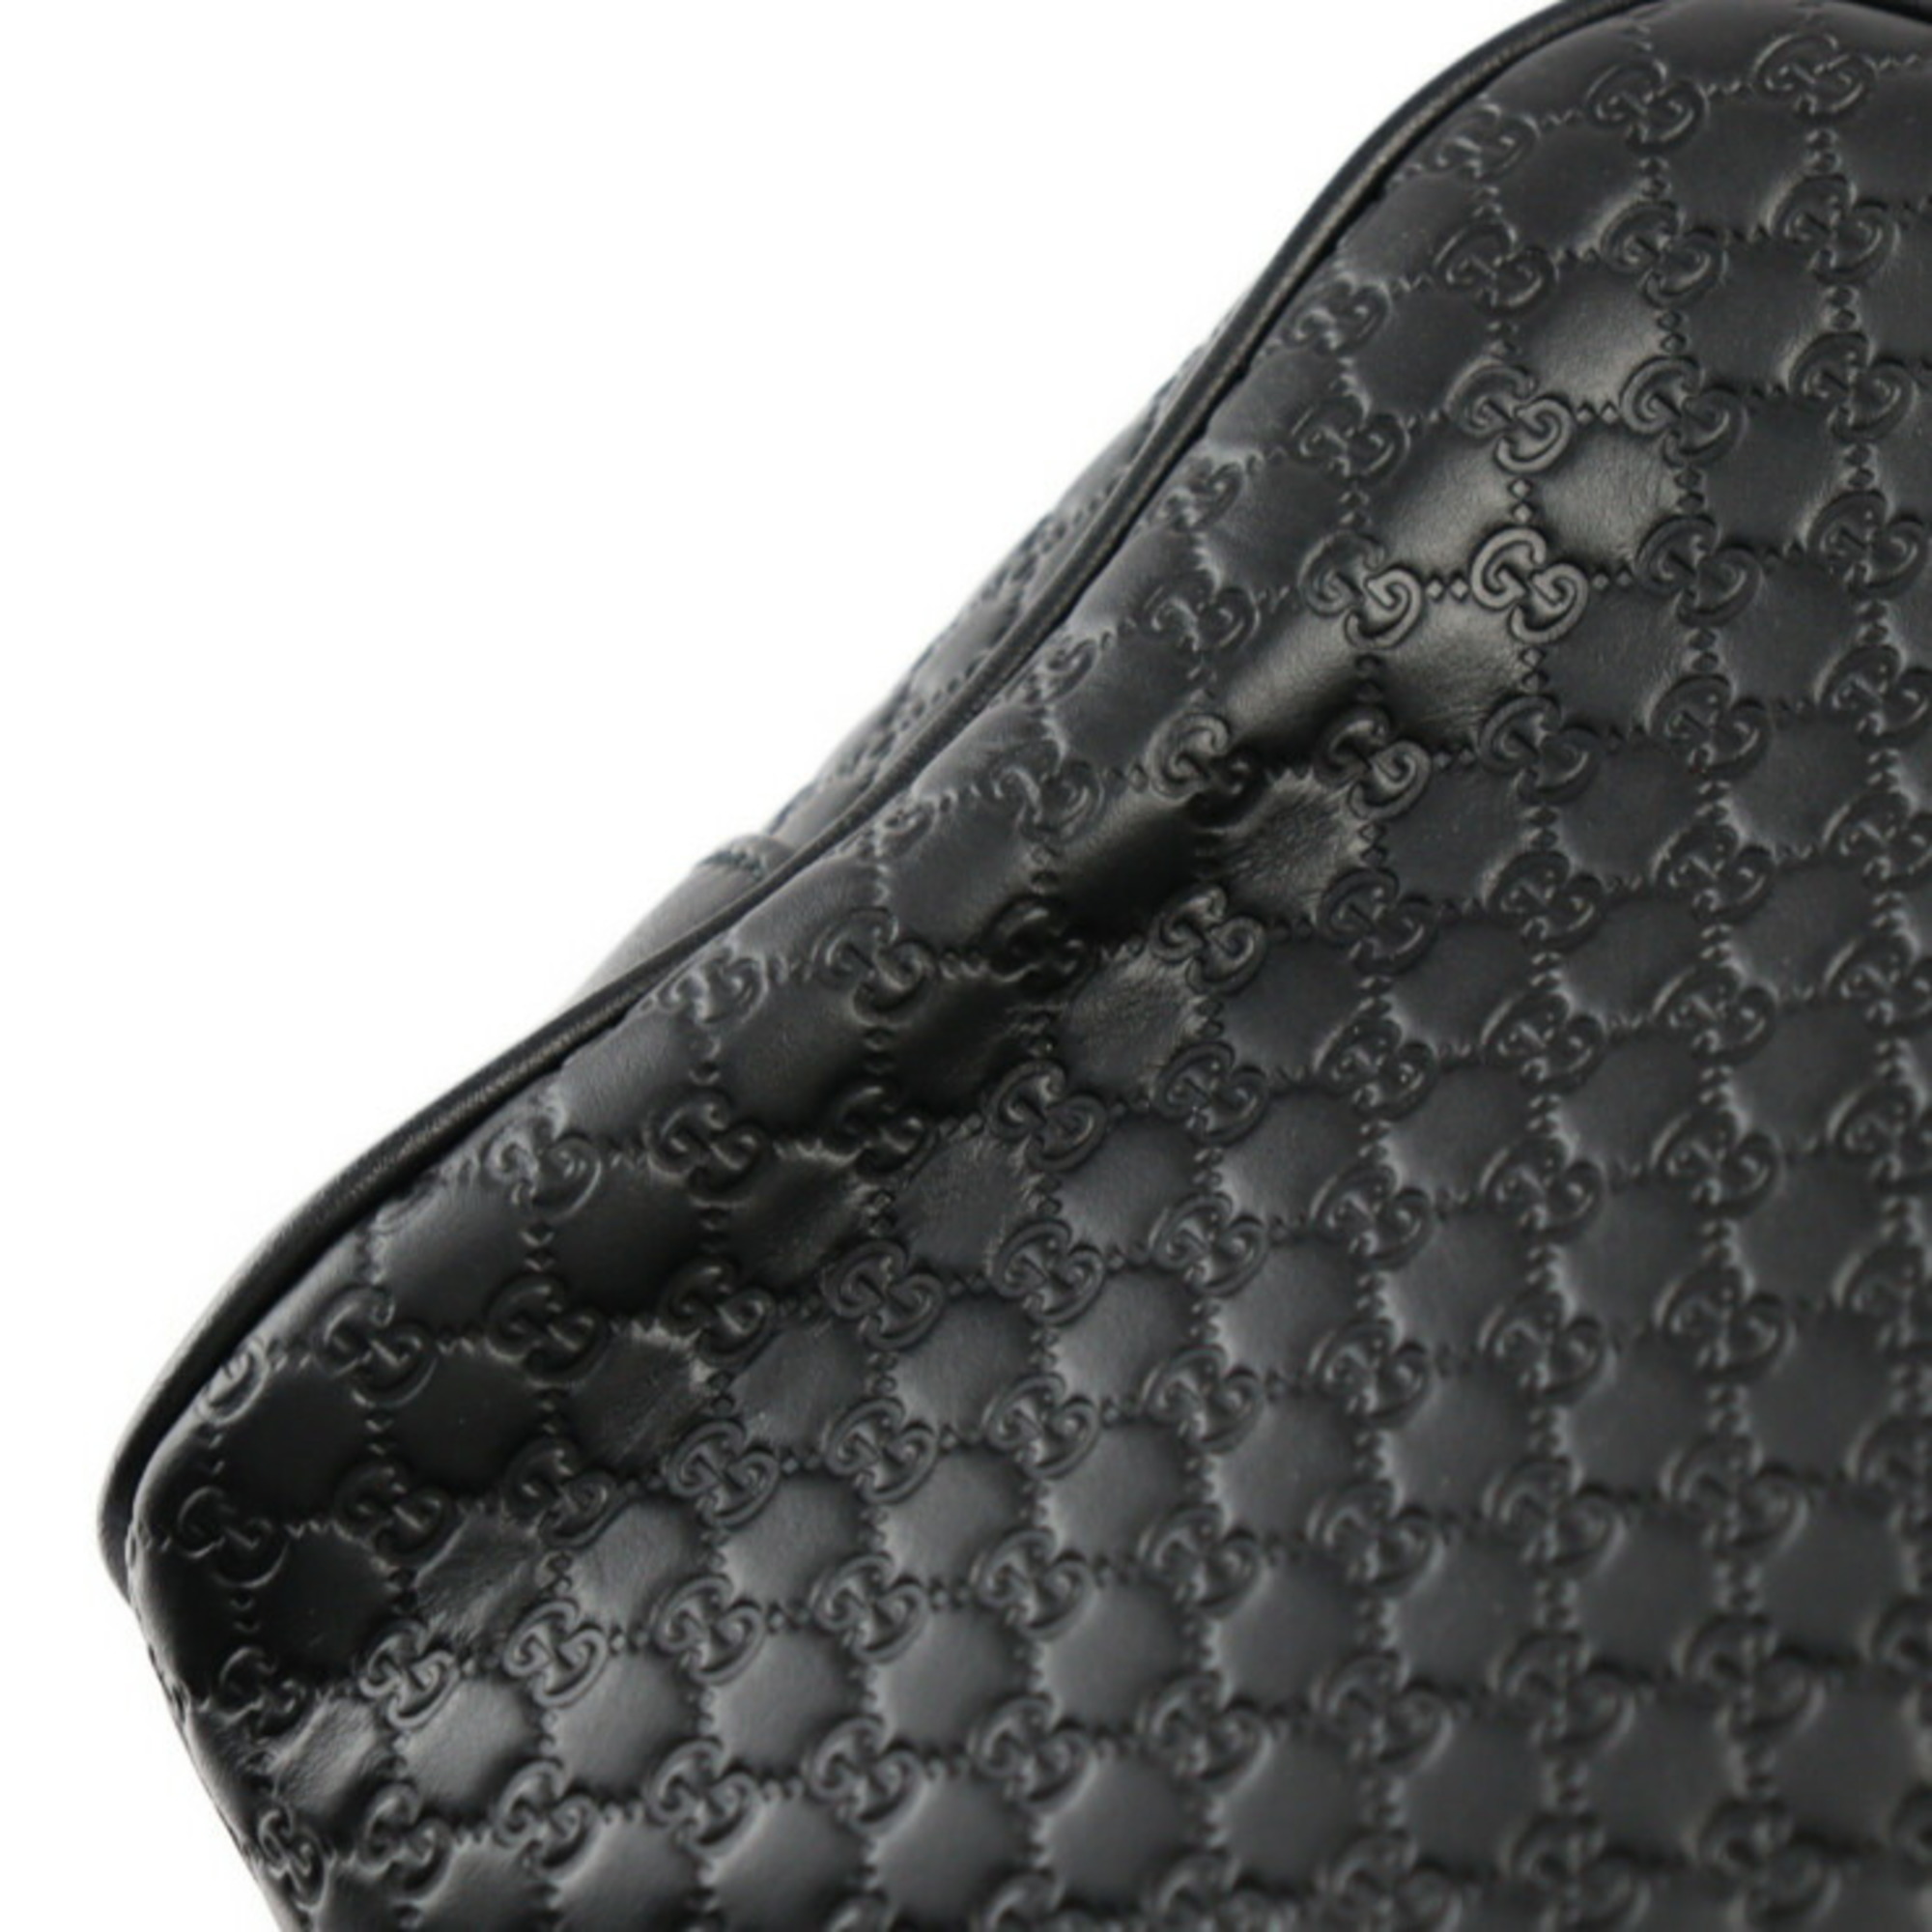 GUCCI Gucci Micro Guccisima Second Bag 419775 Leather Black Silver Hardware Clutch Pouch